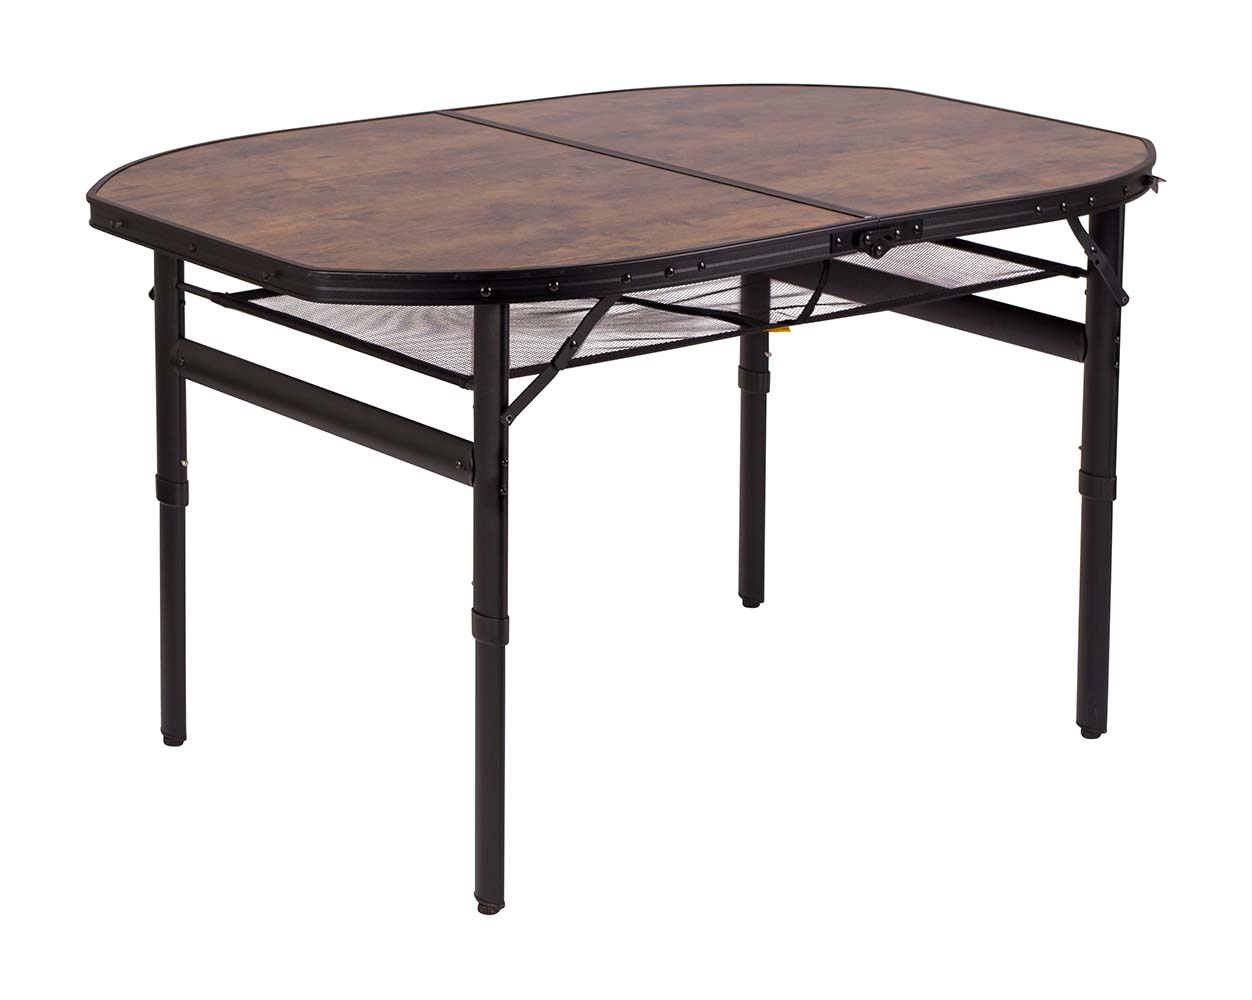 1404220 Een stijlvolle aluminium tafel met een industriële uitstraling en houtlook tafelblad. Door middel van stelschroeven zijn de tafelpoten af te stellen op een ongelijke ondergrond. De poten zijn in 2 verschillende hoogtes verstelbaar (37/70). Daarnaast is de tafel zeer compact als koffermodel op te bergen door de afneembare poten en een deelbaar blad. Bovendien is de tafel voorzien van een net onder het MDF tafelblad om spullen in op te bergen, en een handgreep waardoor de tafel gemakkelijk is mee te nemen. Ingeklapt (lxbxh): 80x7x60,5 cm.